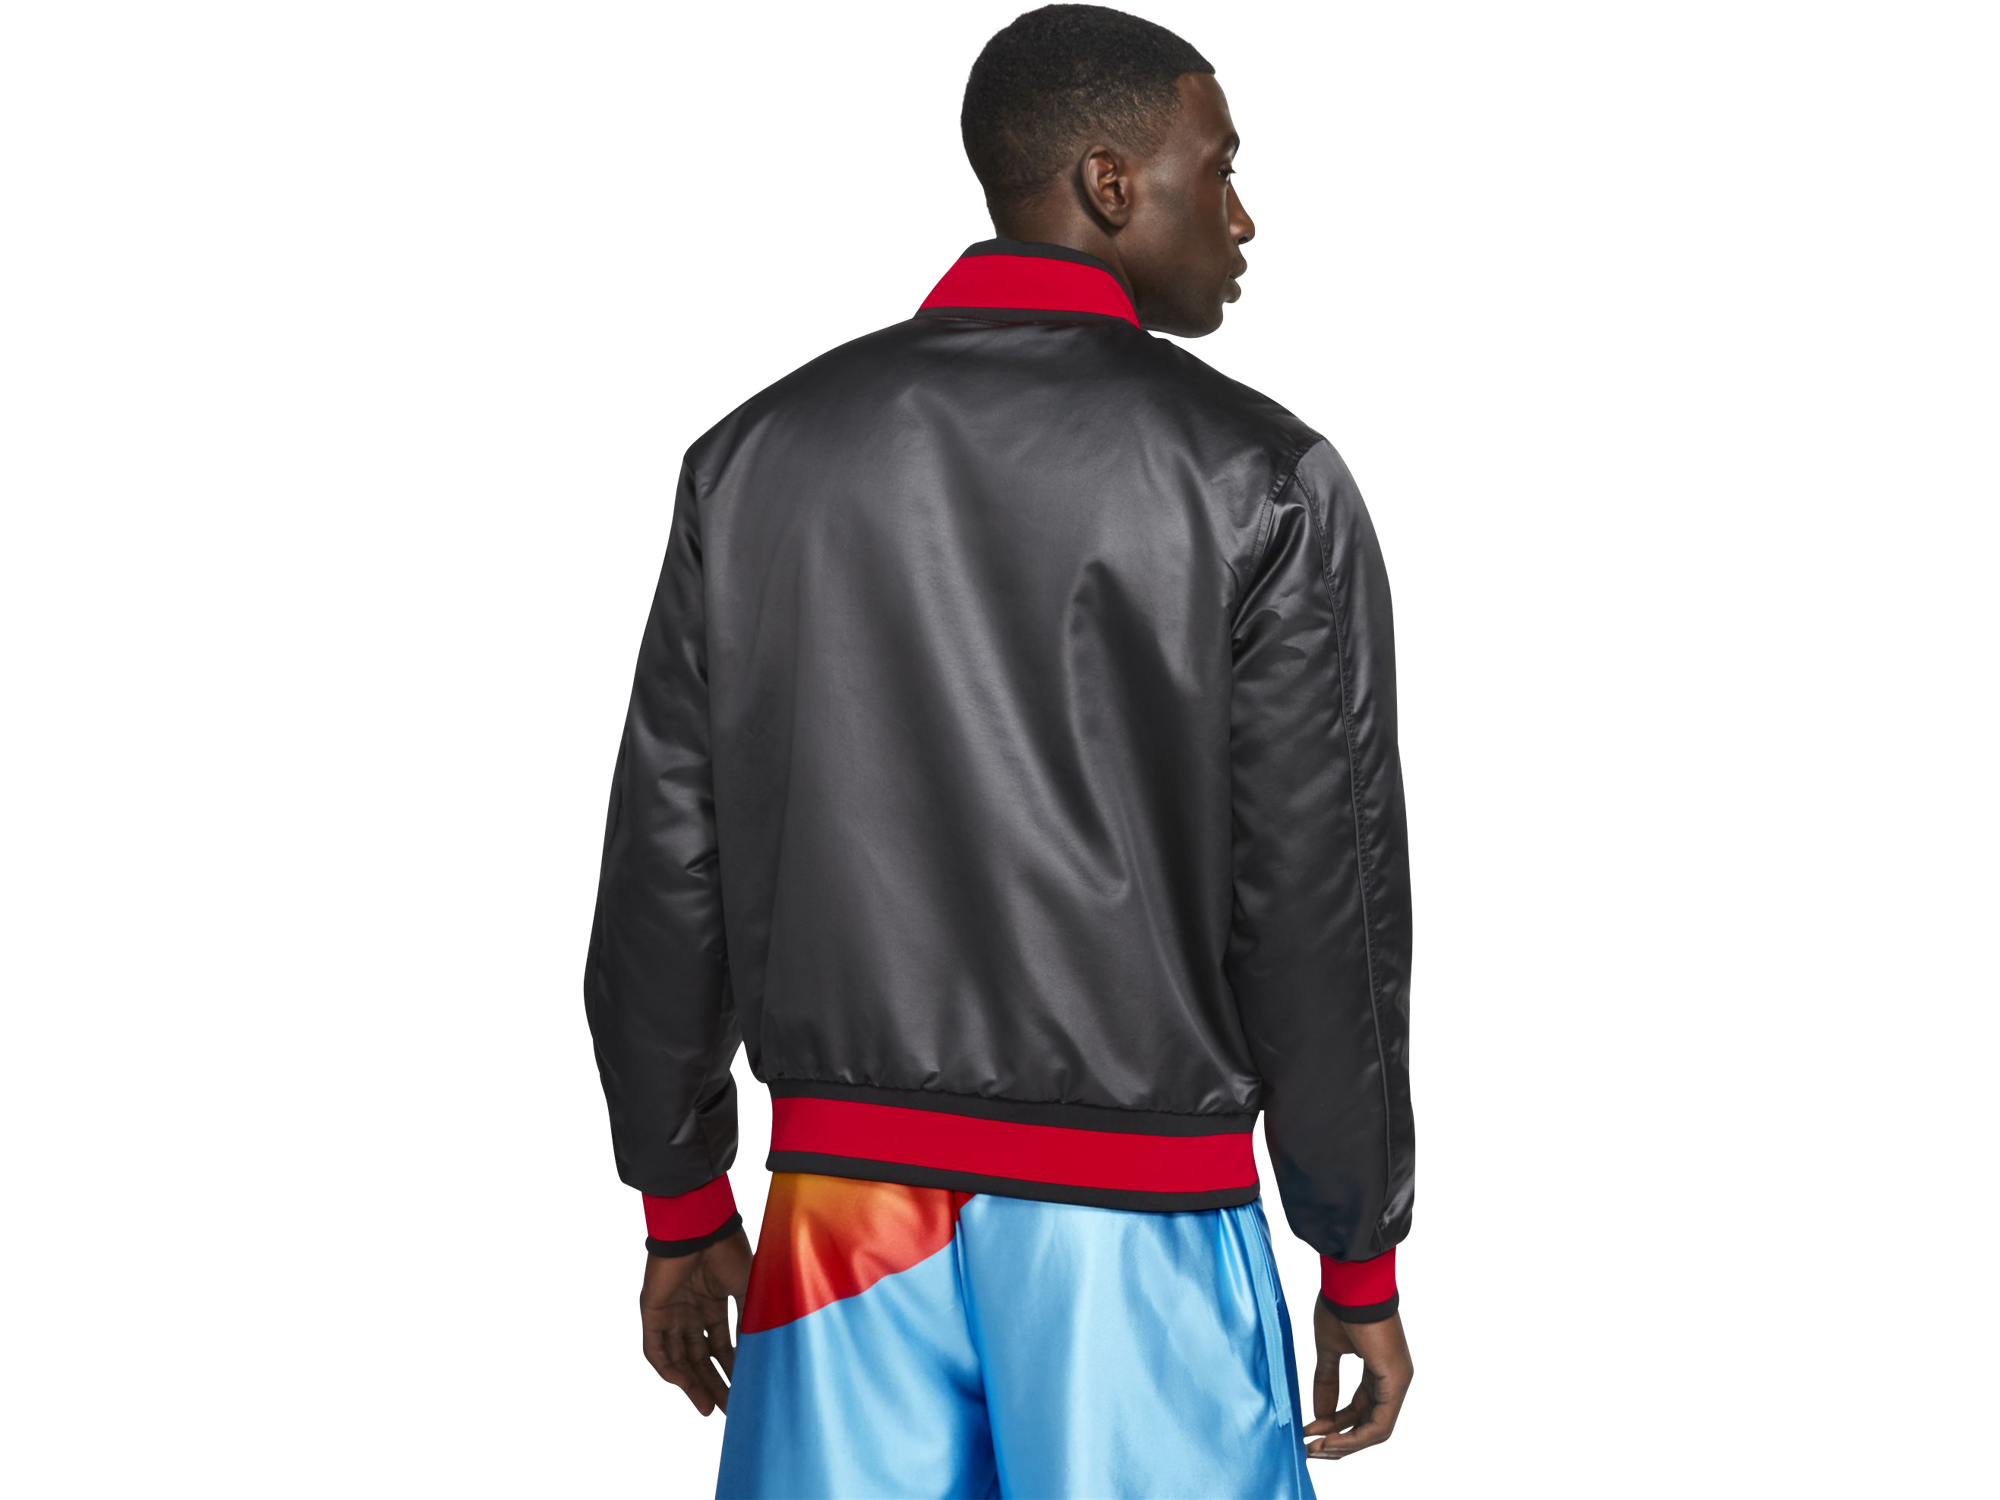 Nike Lebron x Space Jam "Tune Squad" Jacket